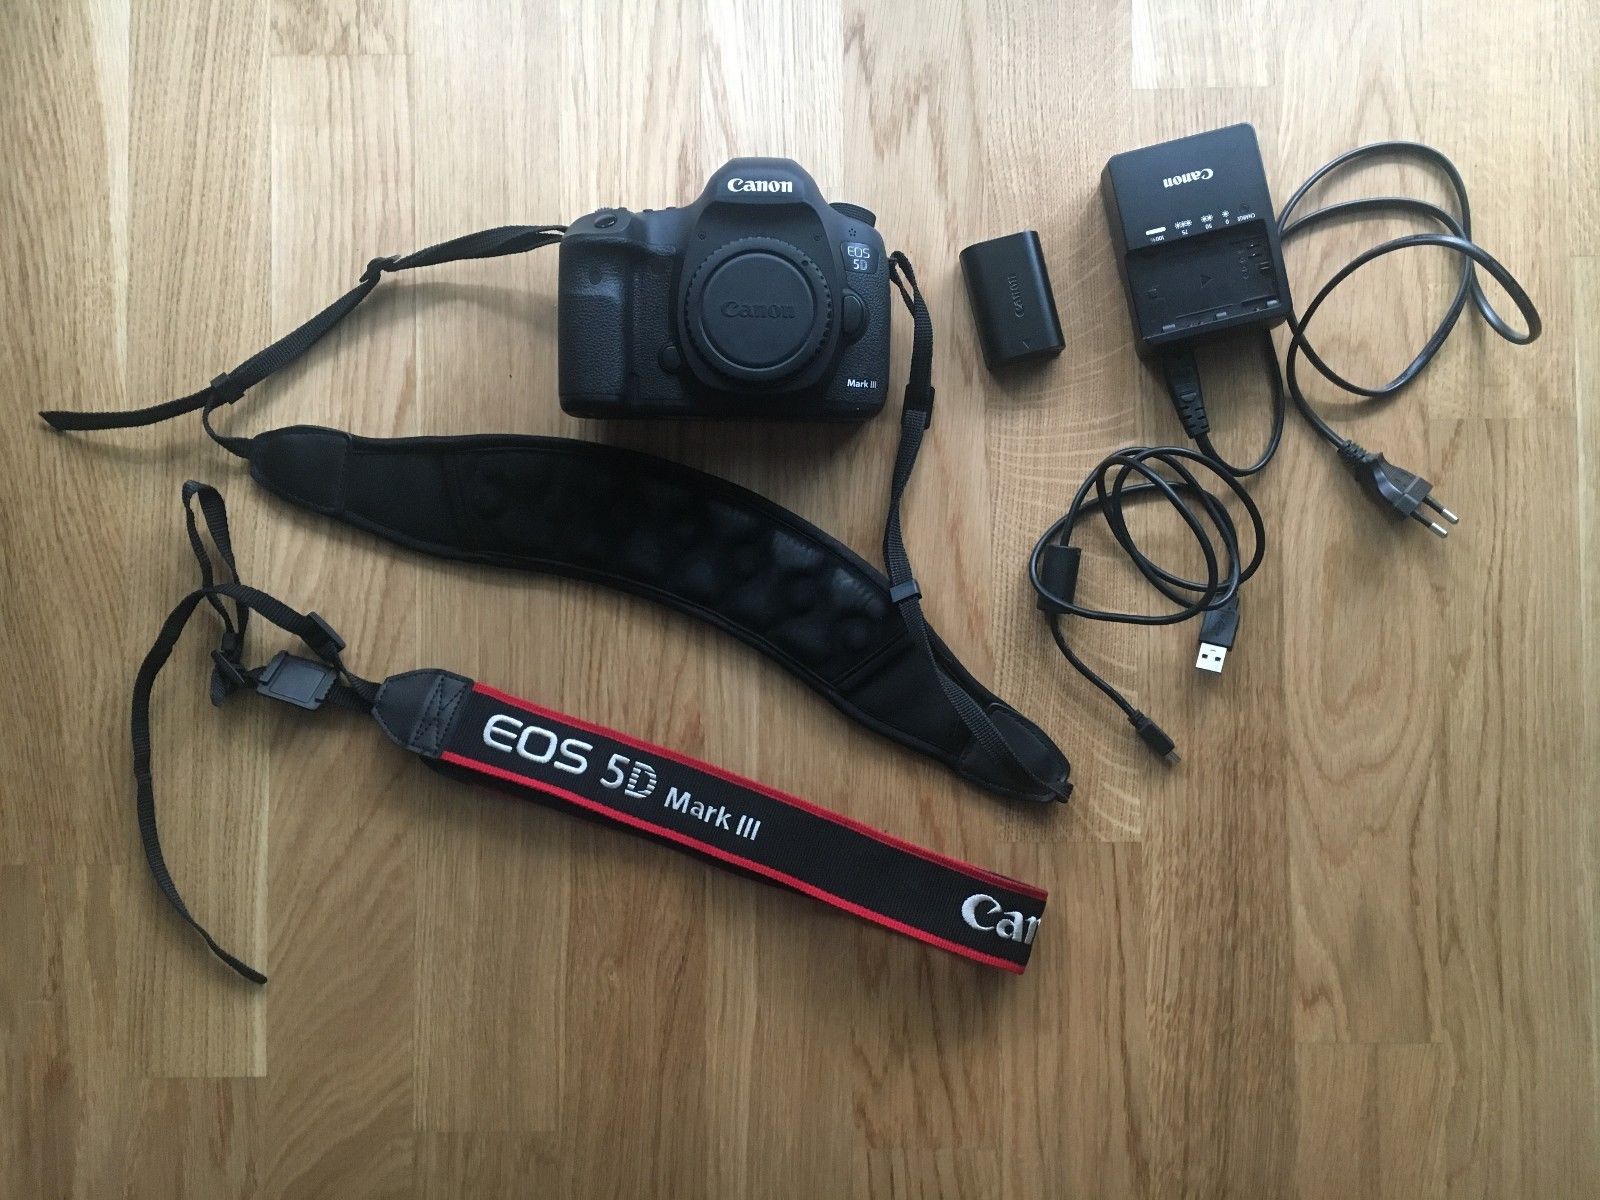 Canon EOS 5D Mark III in TOP Zustand mit 7732 Auslösungen + CompactFlash 32GB